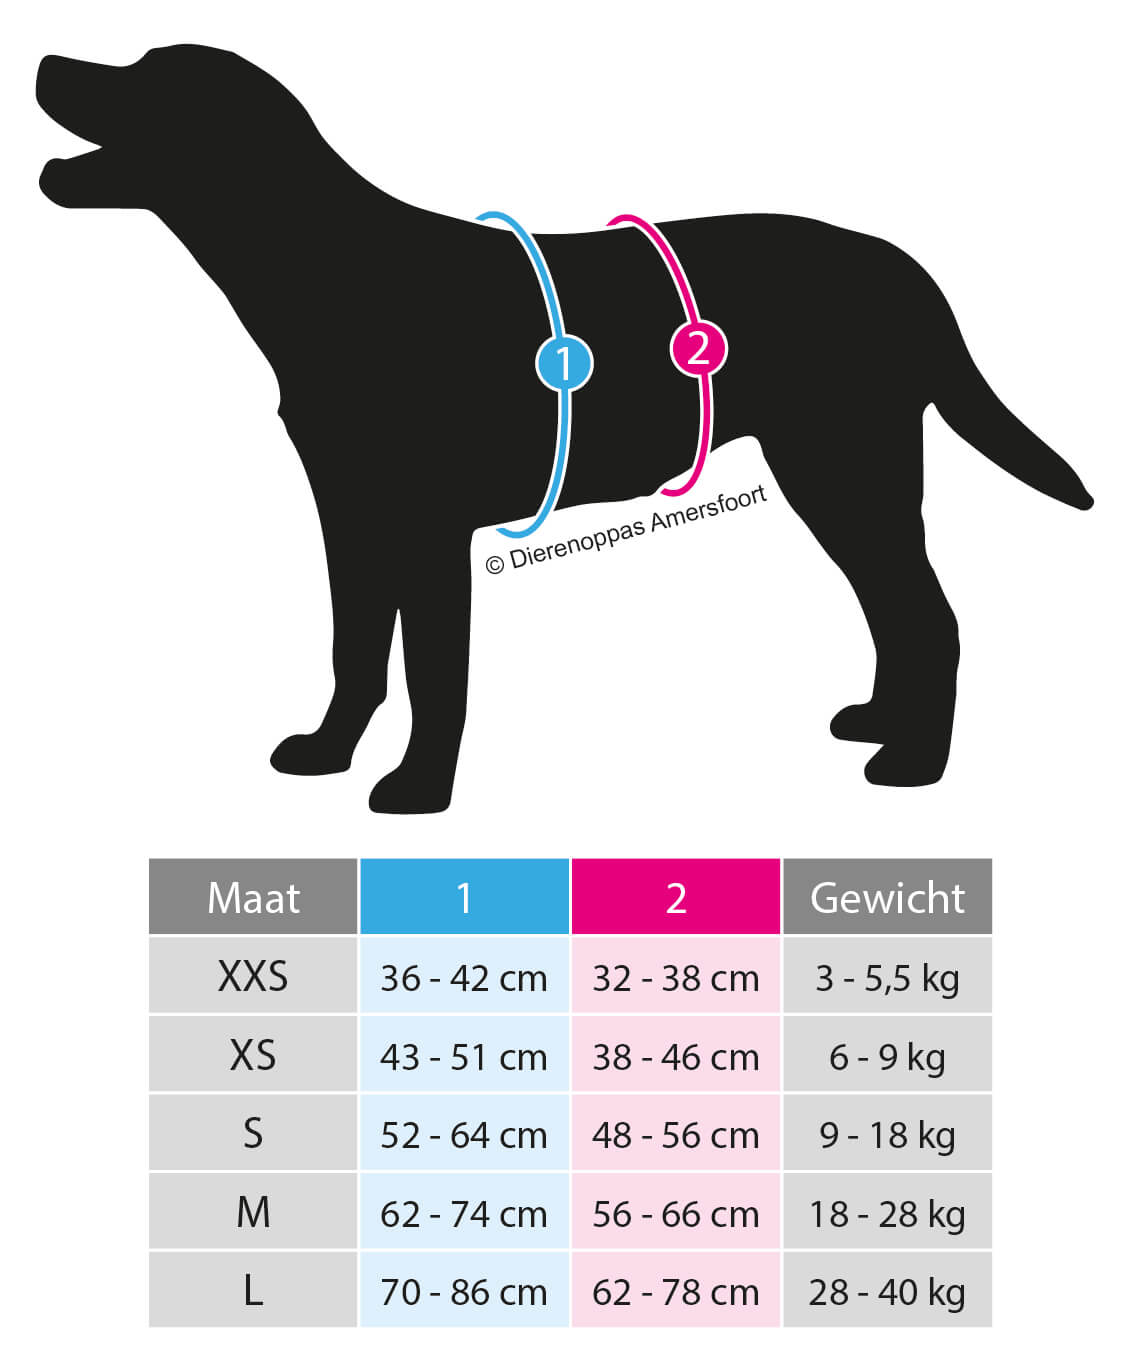 Maattabel Anny-X safety tuig hoe hond meten anti-ontsnappingstuig veiligheidstuig